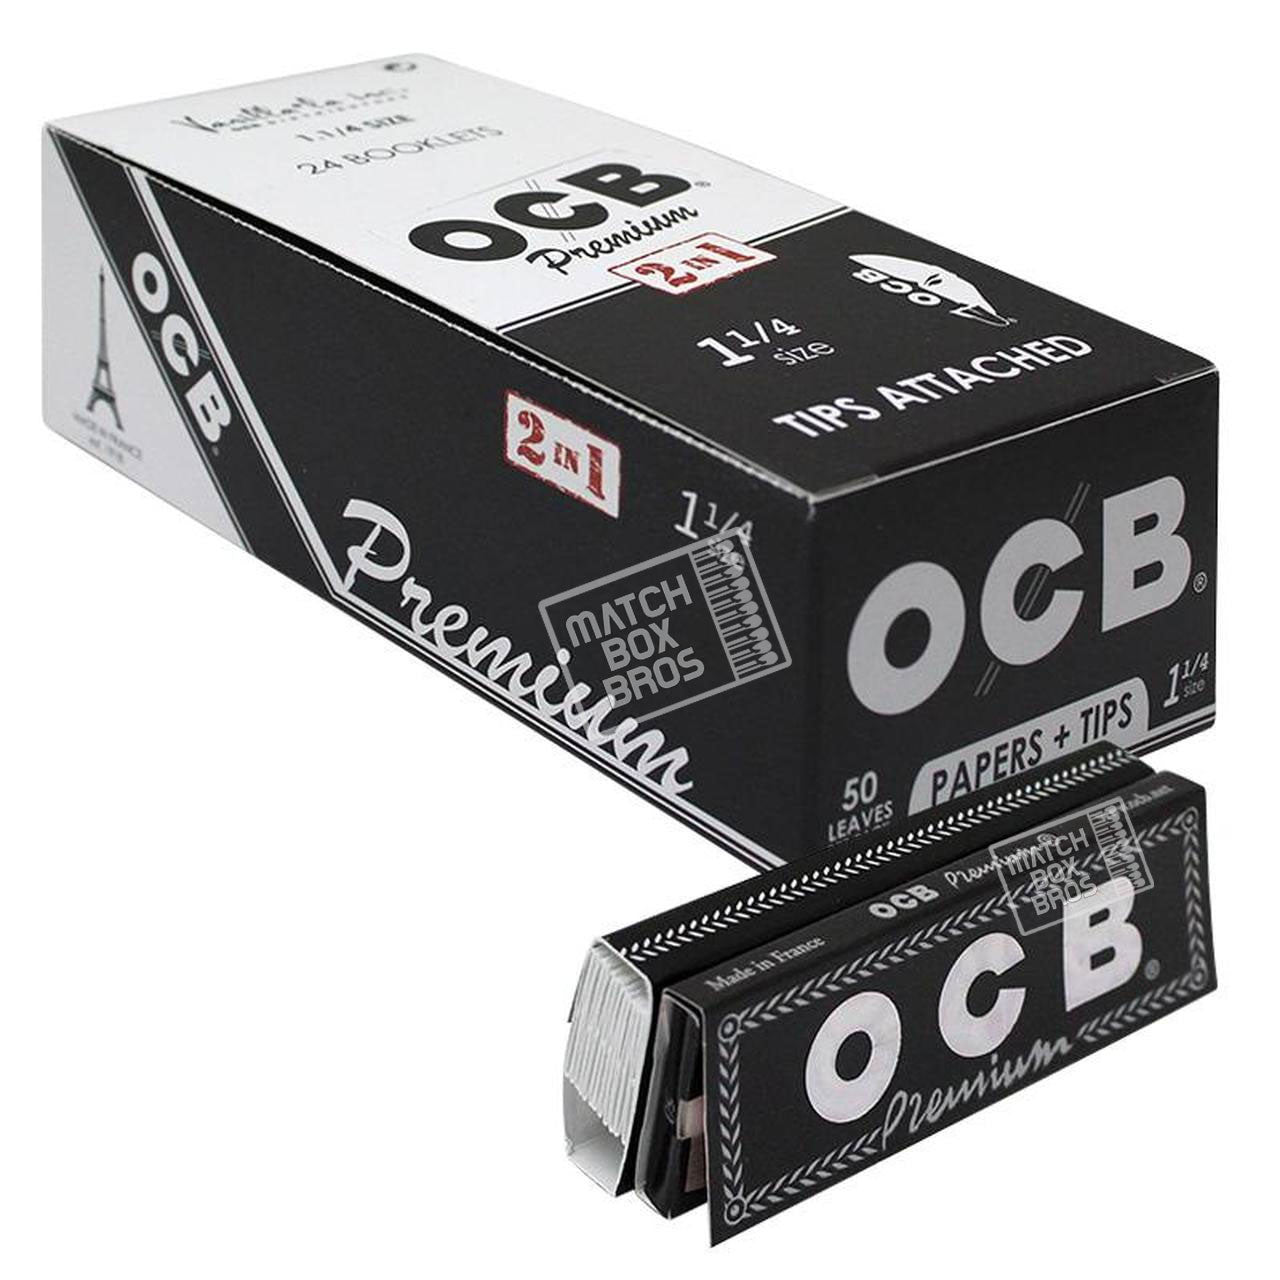 OCB Premium 1¼ Paper + Tips